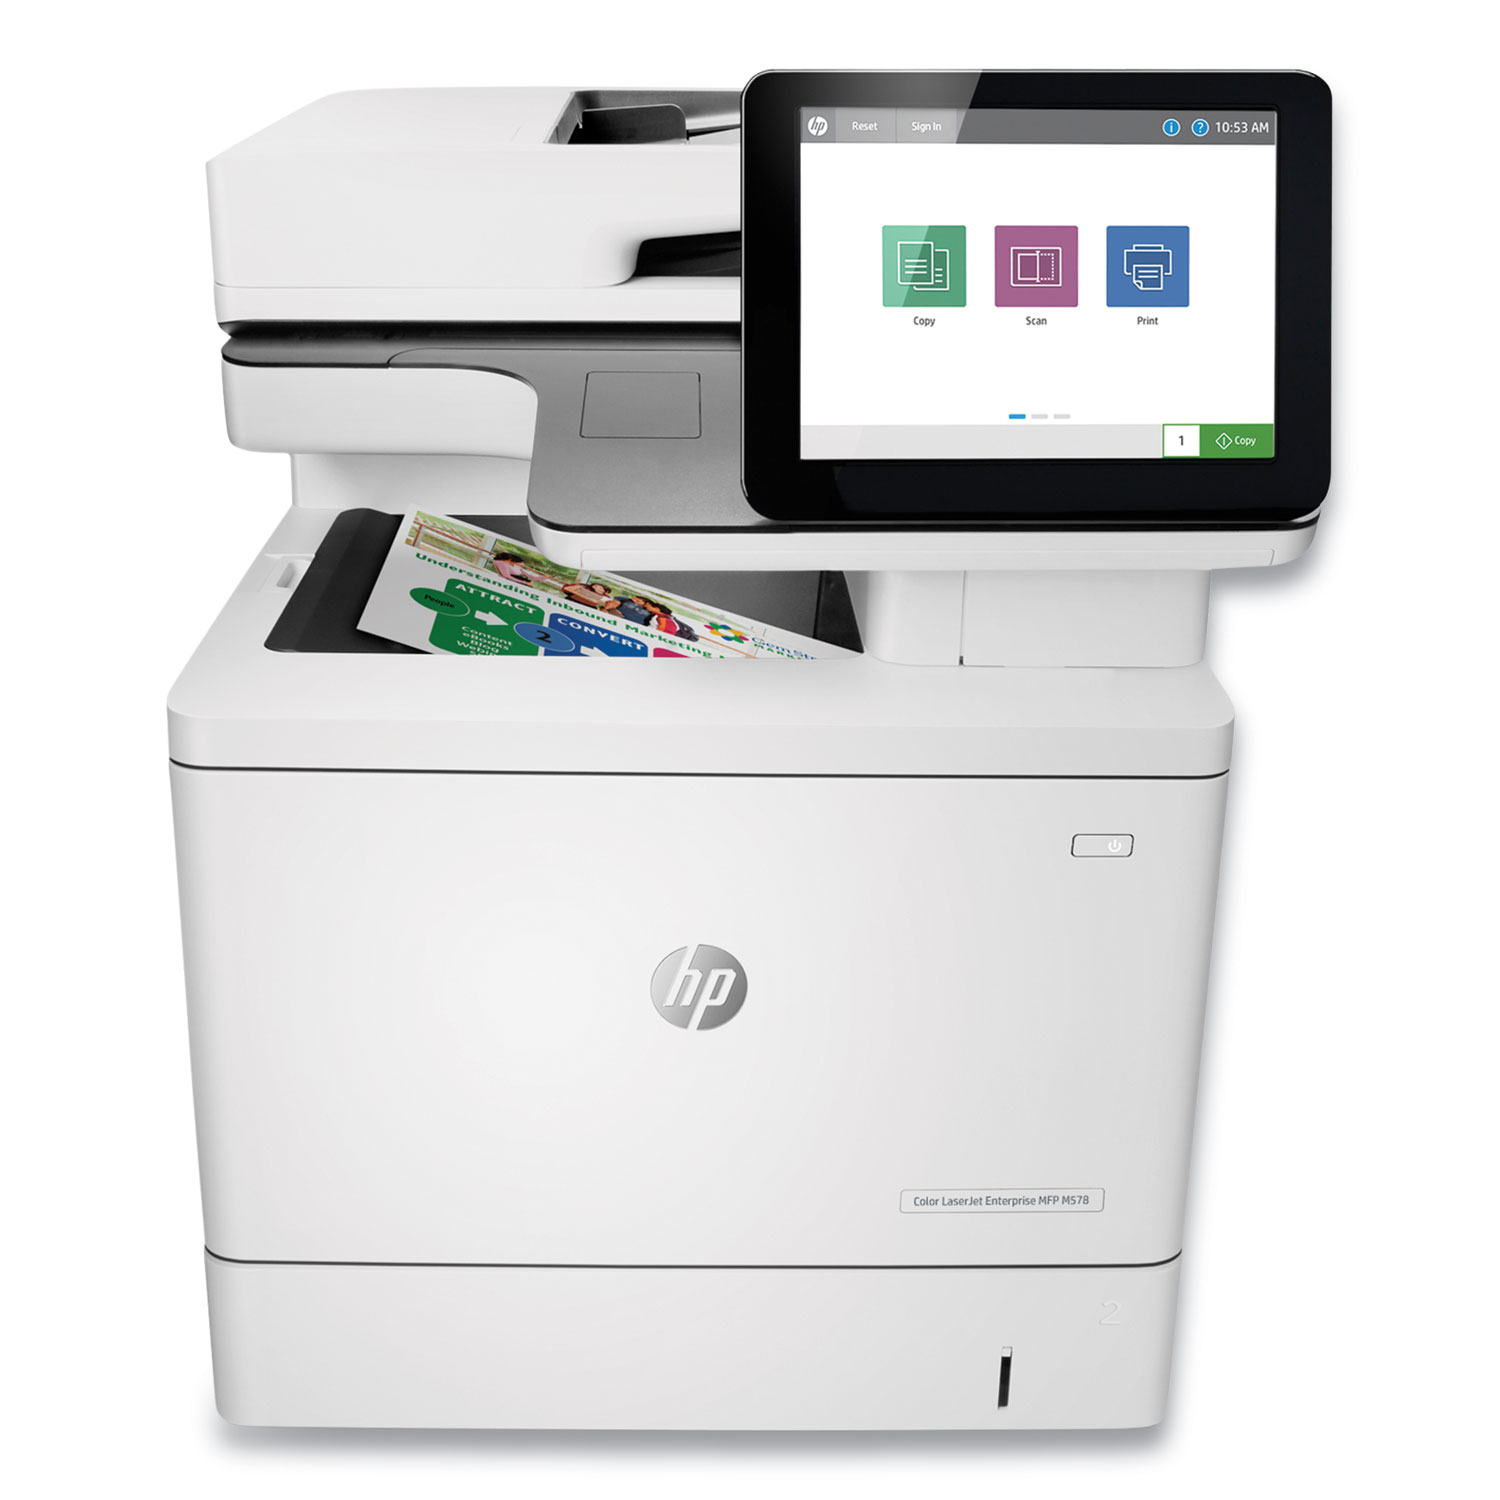  HP 7ZU85A#BGJ LaserJet Enterprise MFP M578dn Multifunction Printer, Copy/Print/Scan (HEW7ZU85A) 